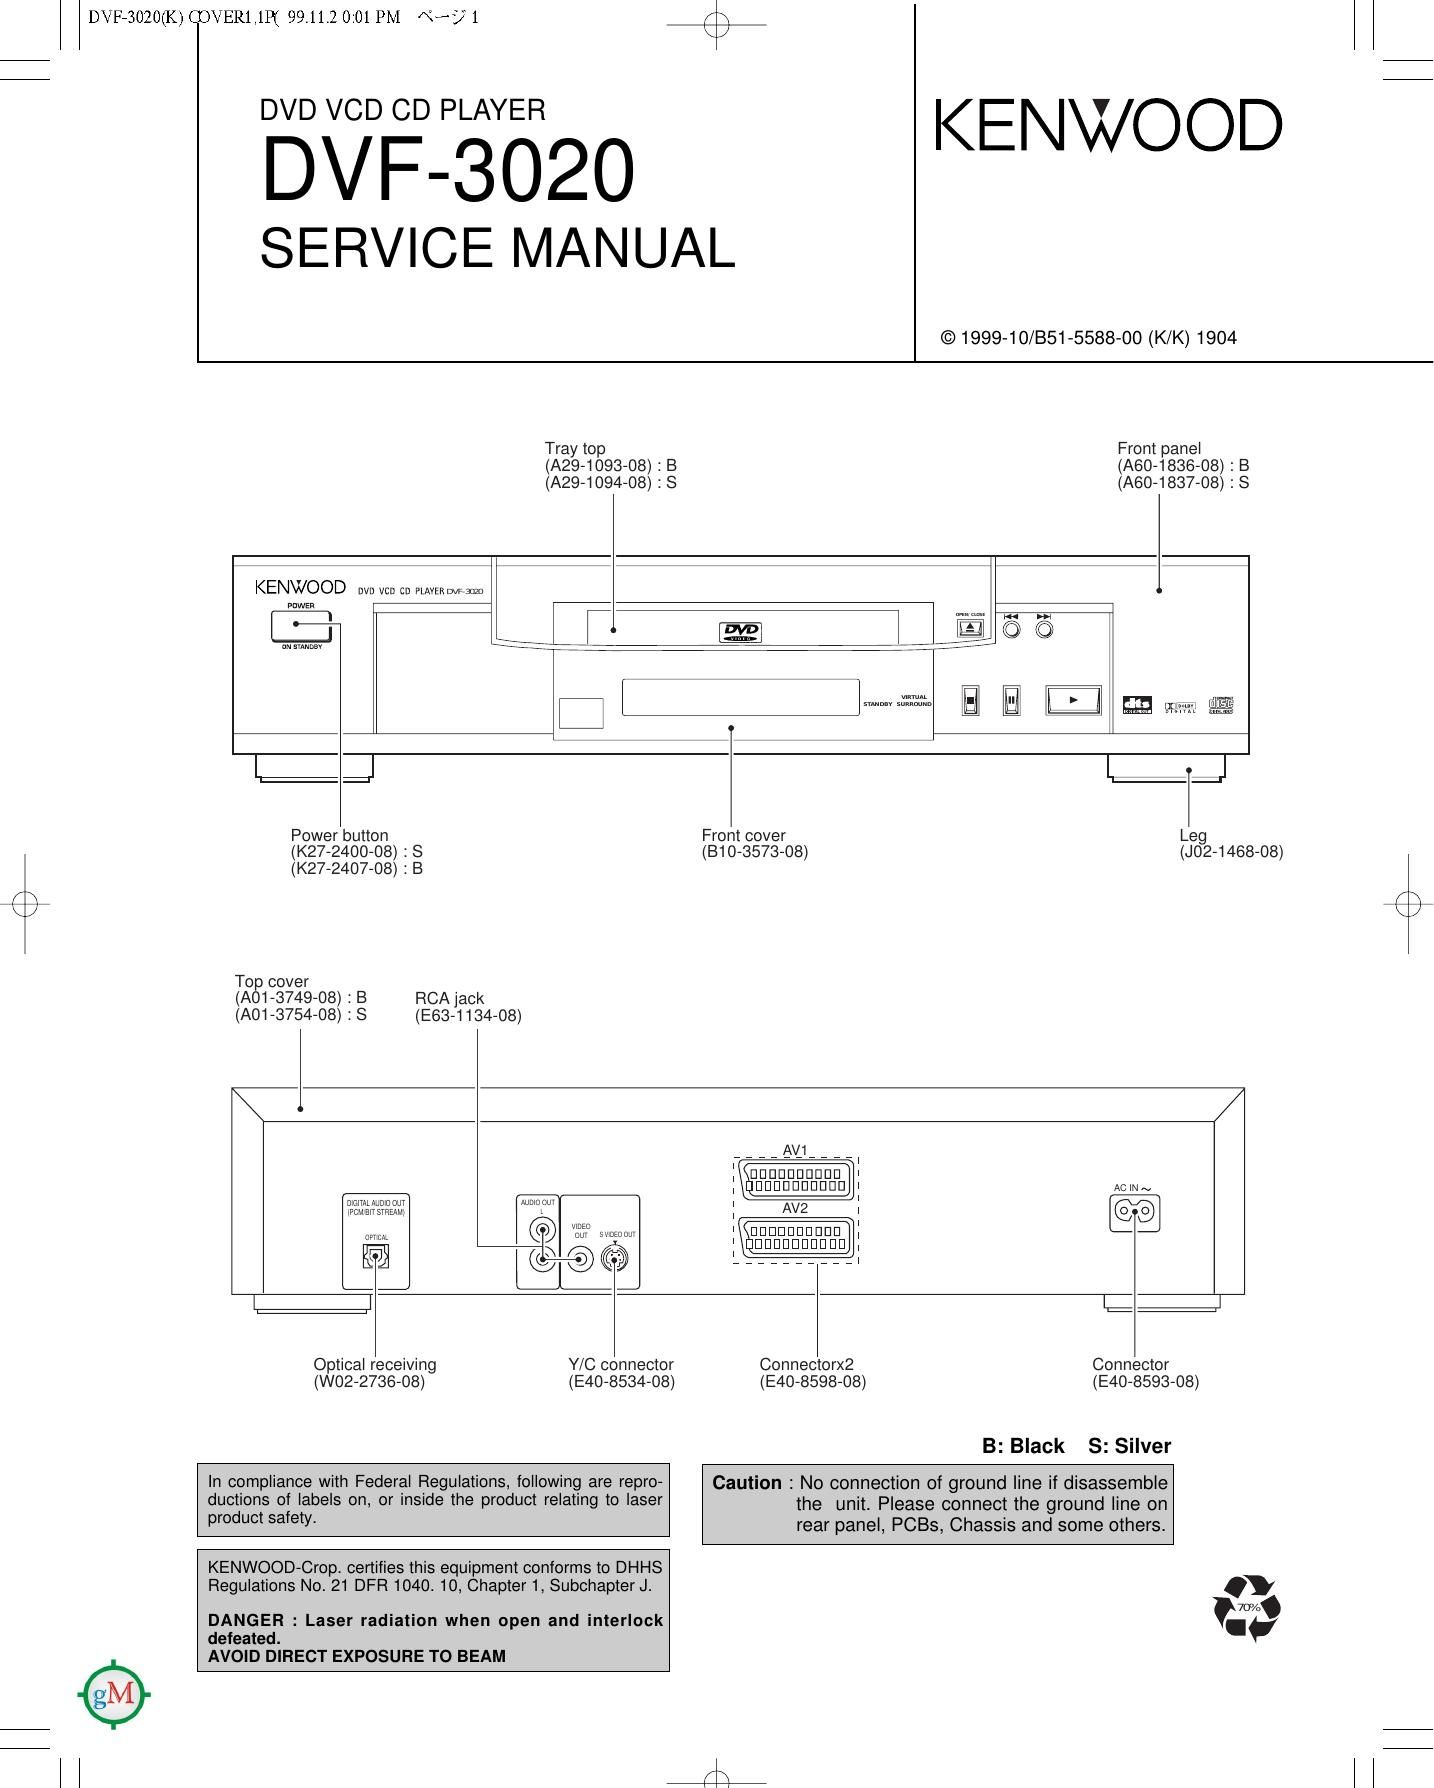 Kenwood DVF 3020 Service Manual